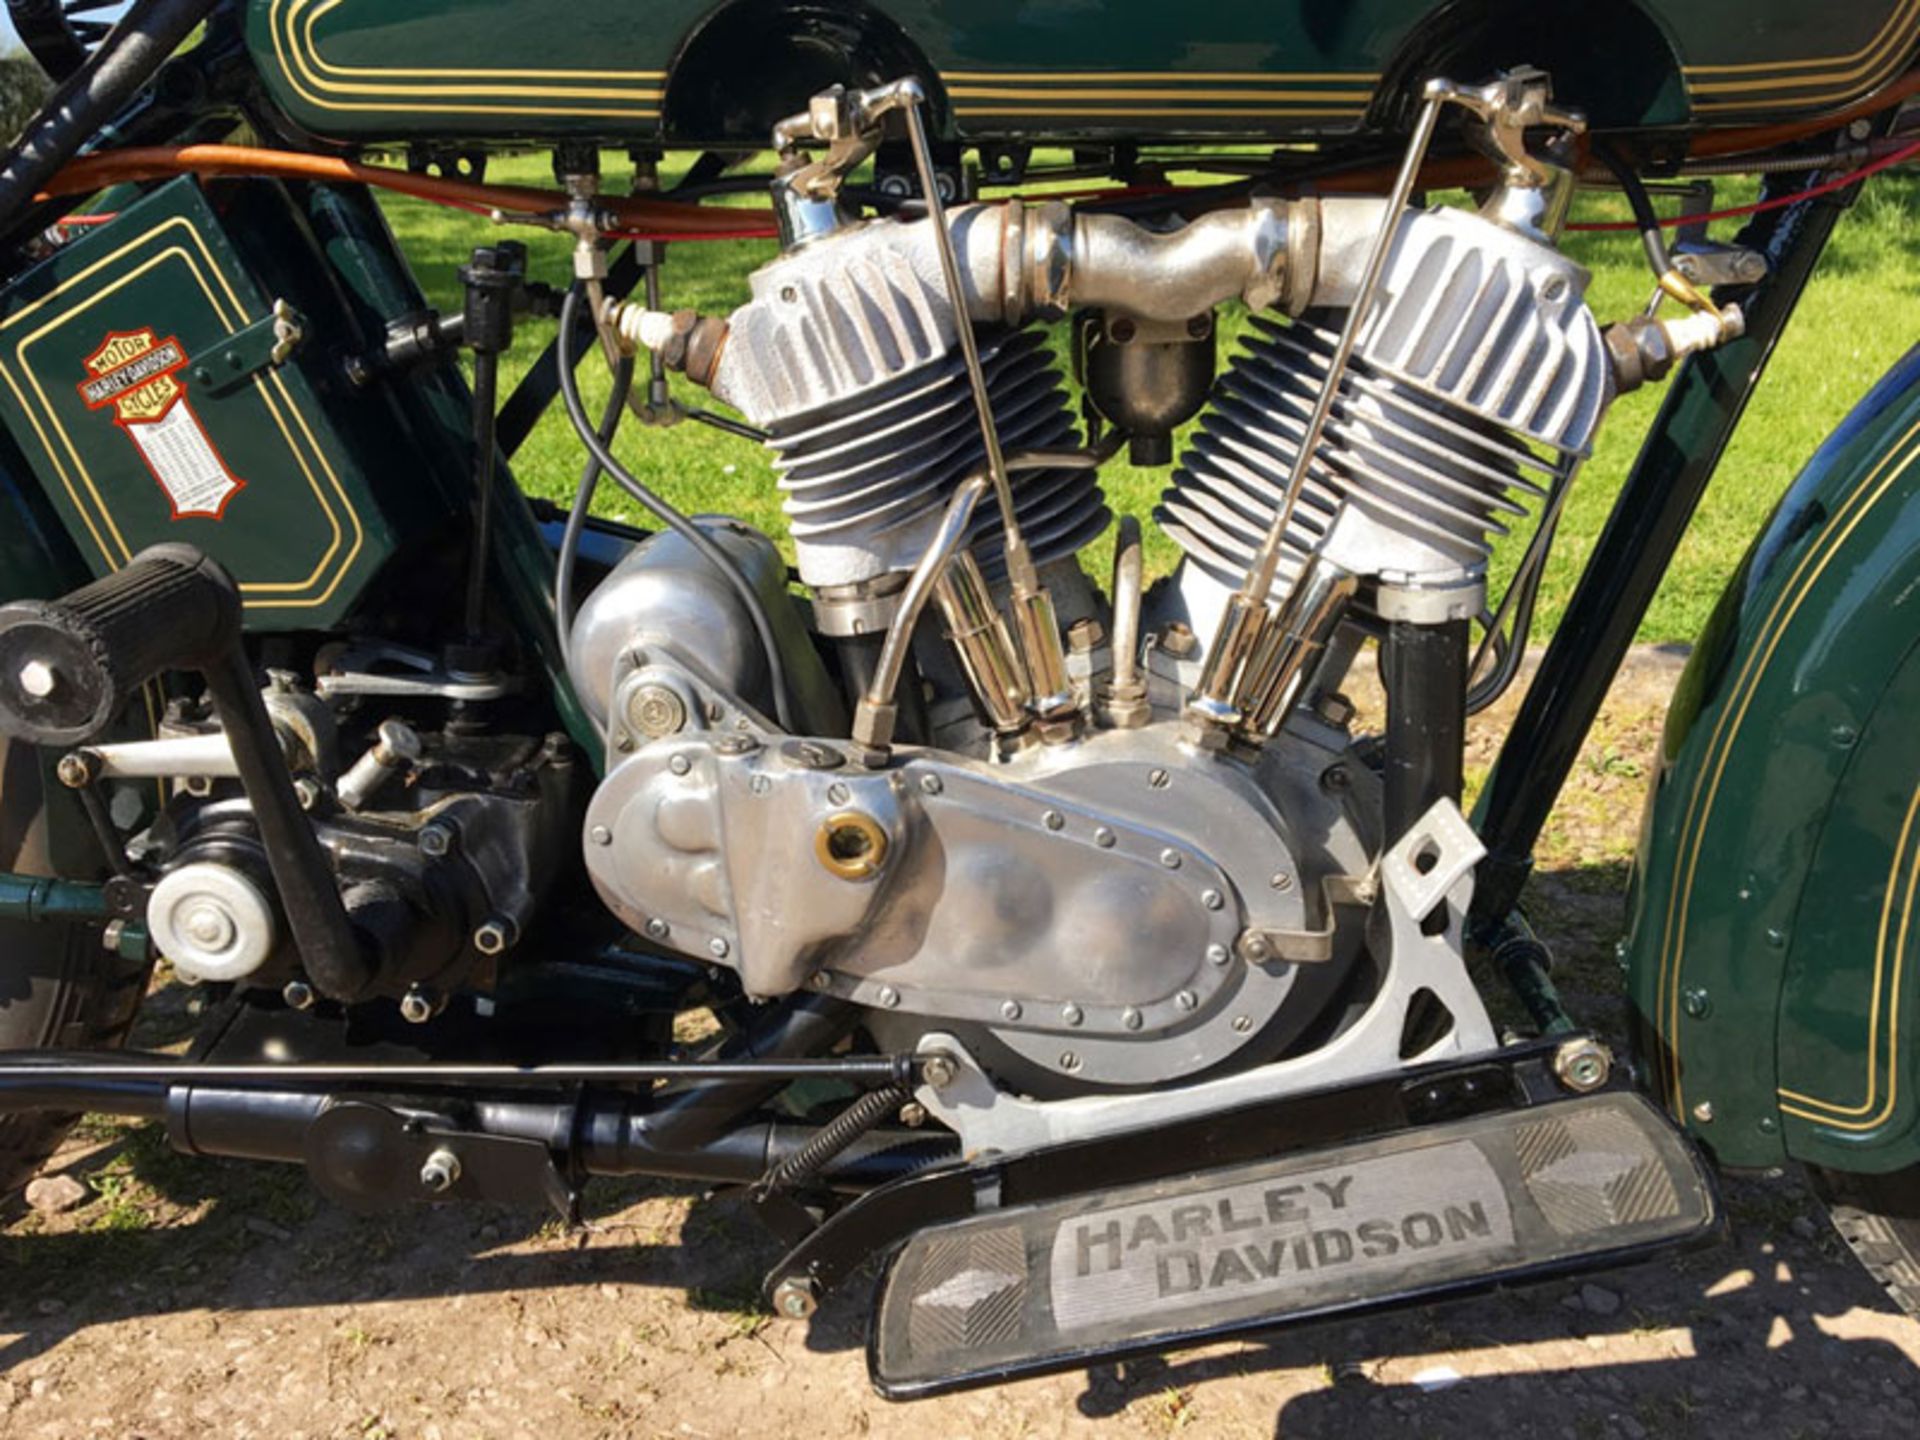 1923 Harley Davidson Model J - Image 7 of 7